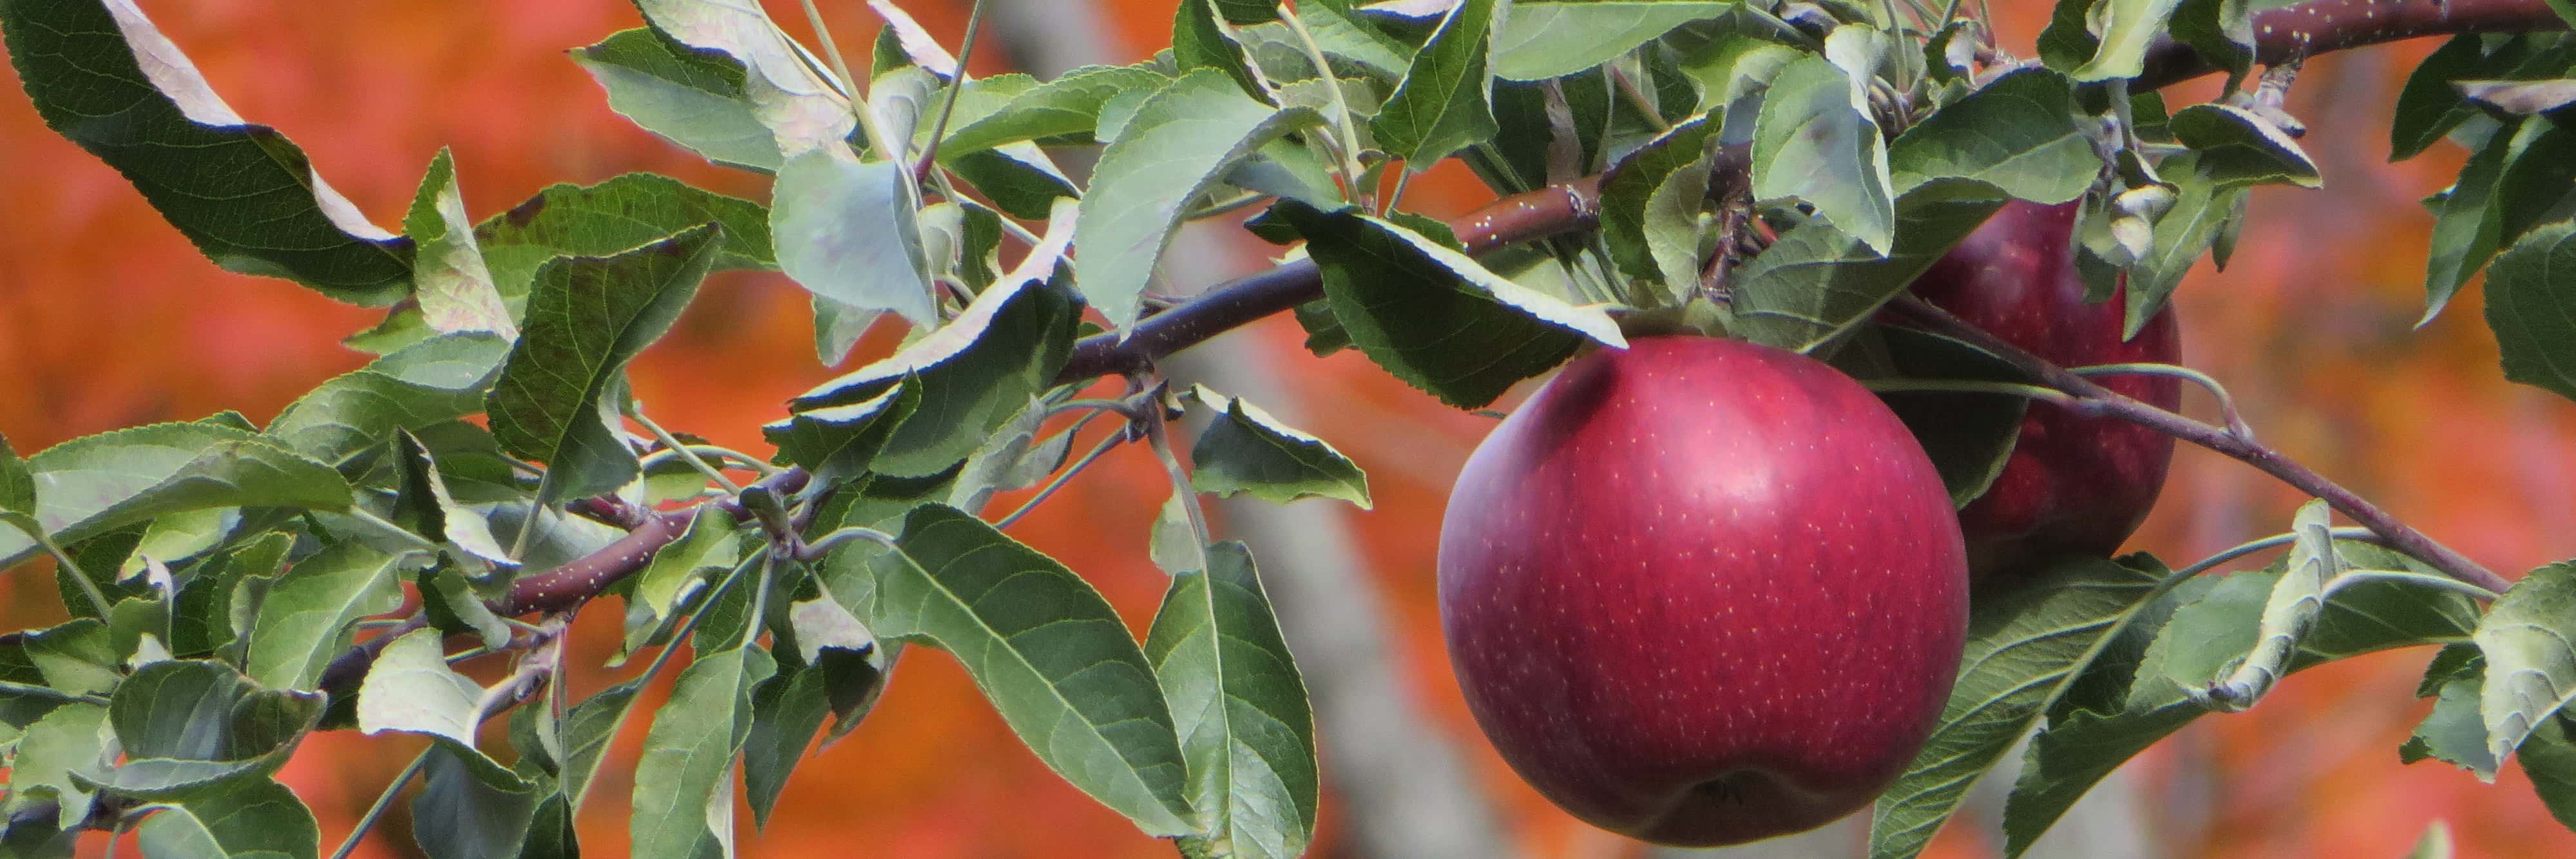 Apples on a tree